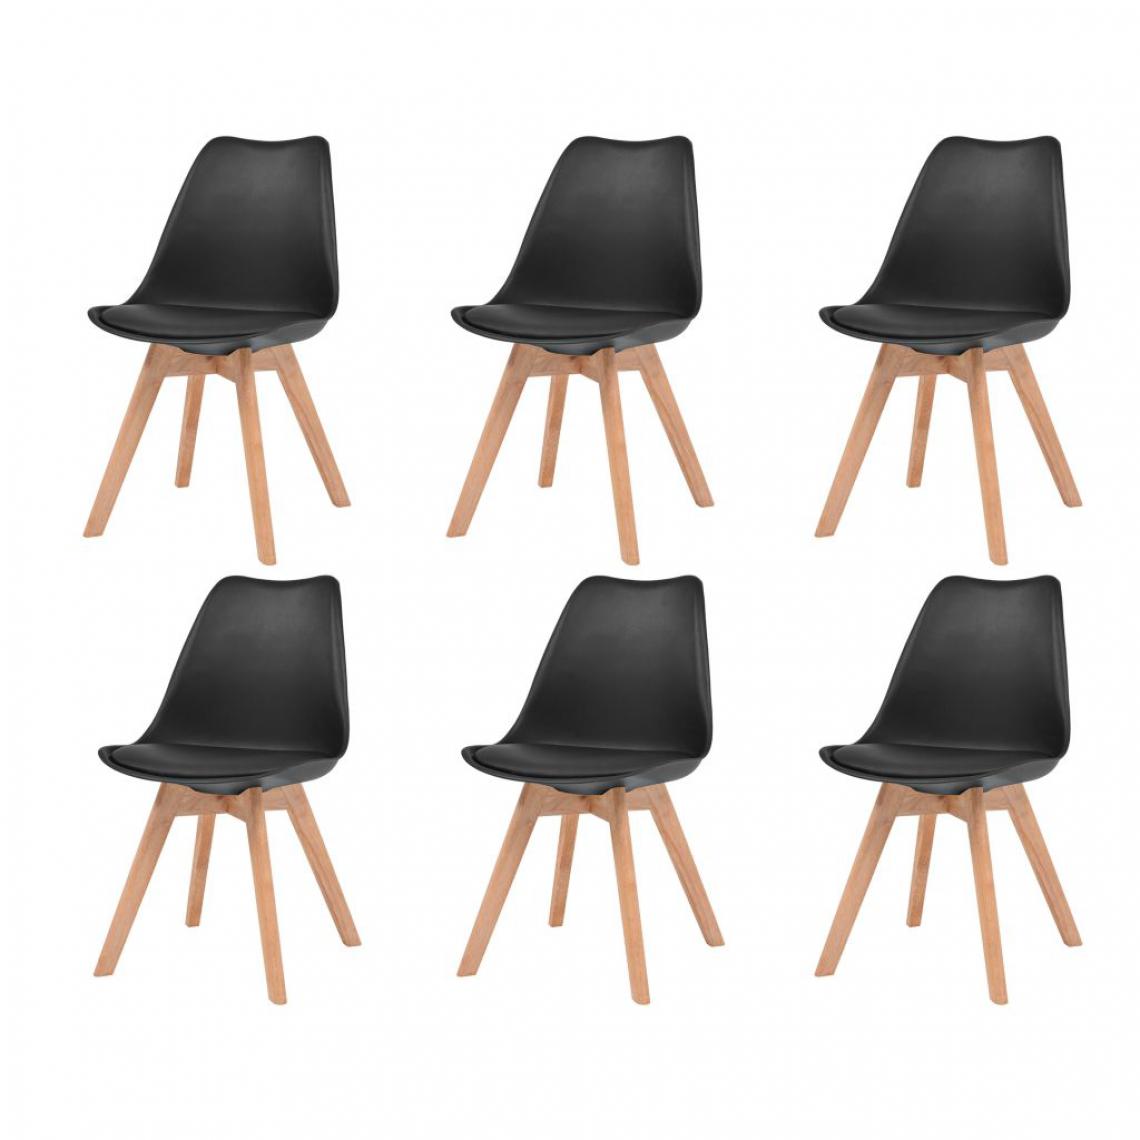 Decoshop26 - Lot de 6 chaises de salle à manger cuisine design scandinave pieds en bois clair similicuir noir CDS022692 - Chaises